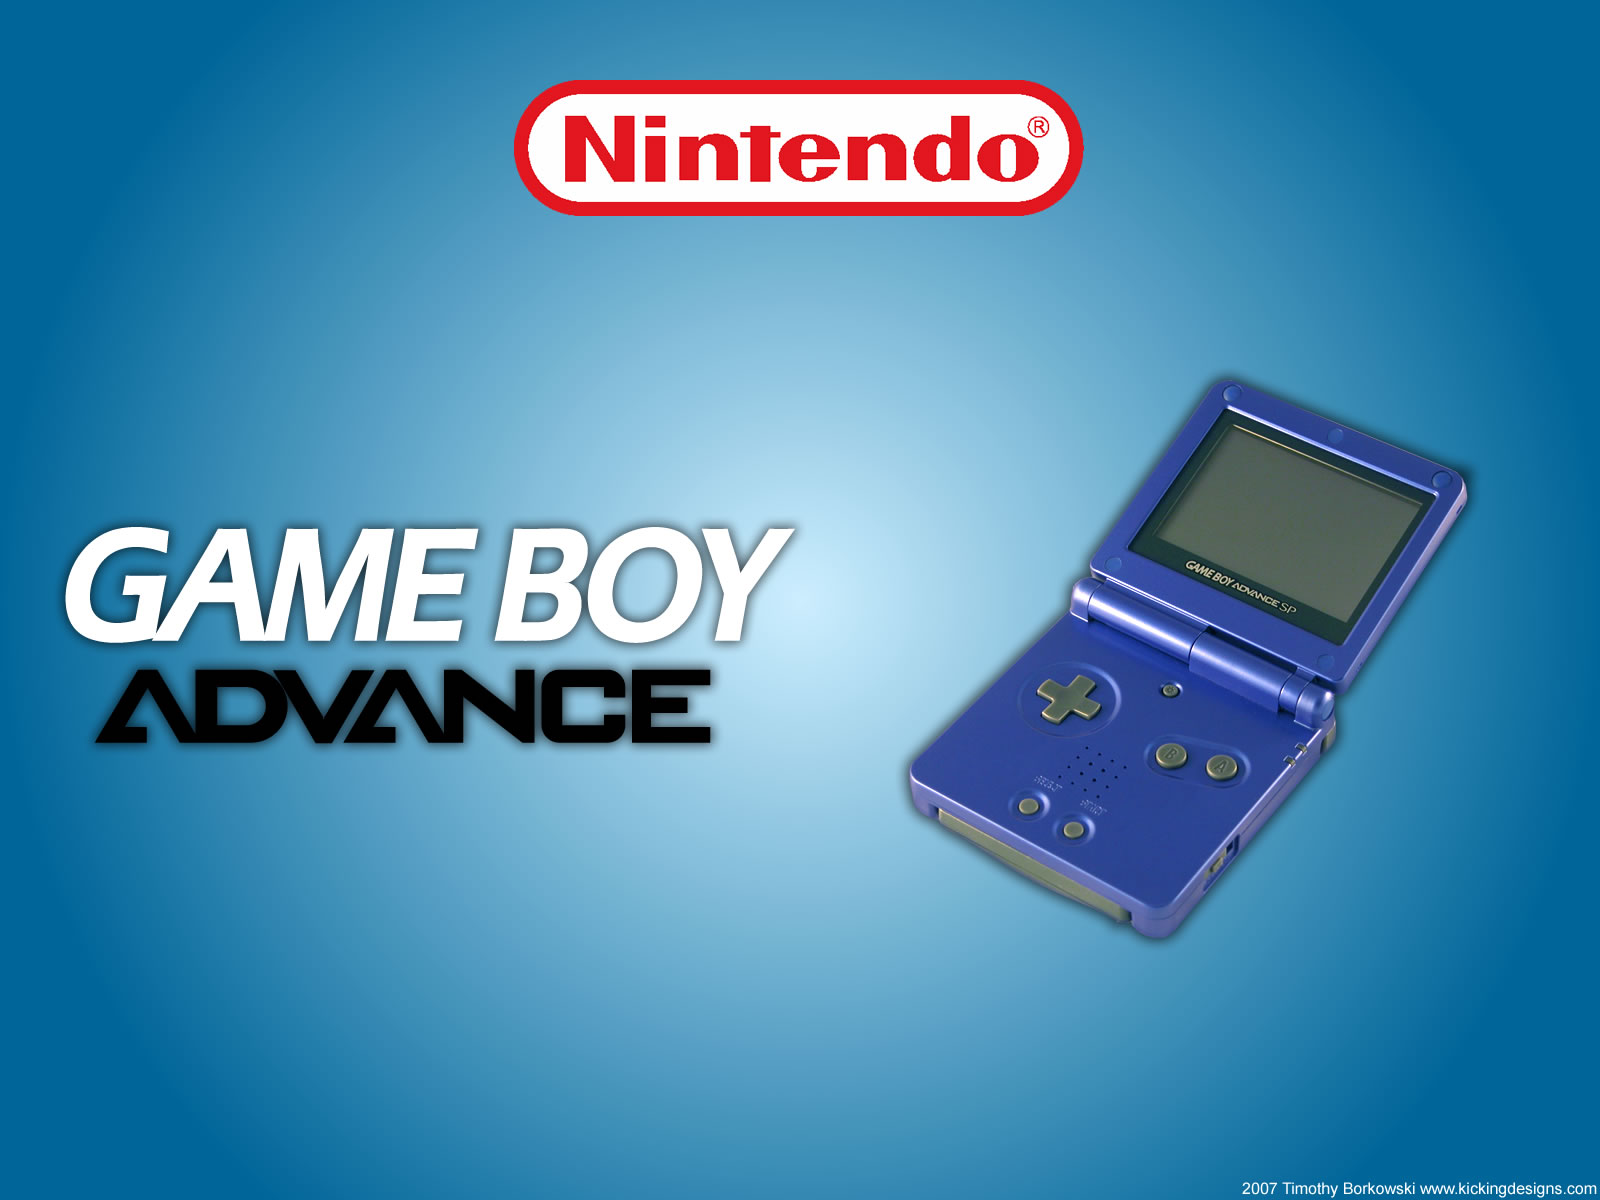 Лучшая game boy. Нинтендо геймбой Advance. Game boy Advance SP игры. Nintendo game boy Advance игры. Nintendo game boy Advance SP.